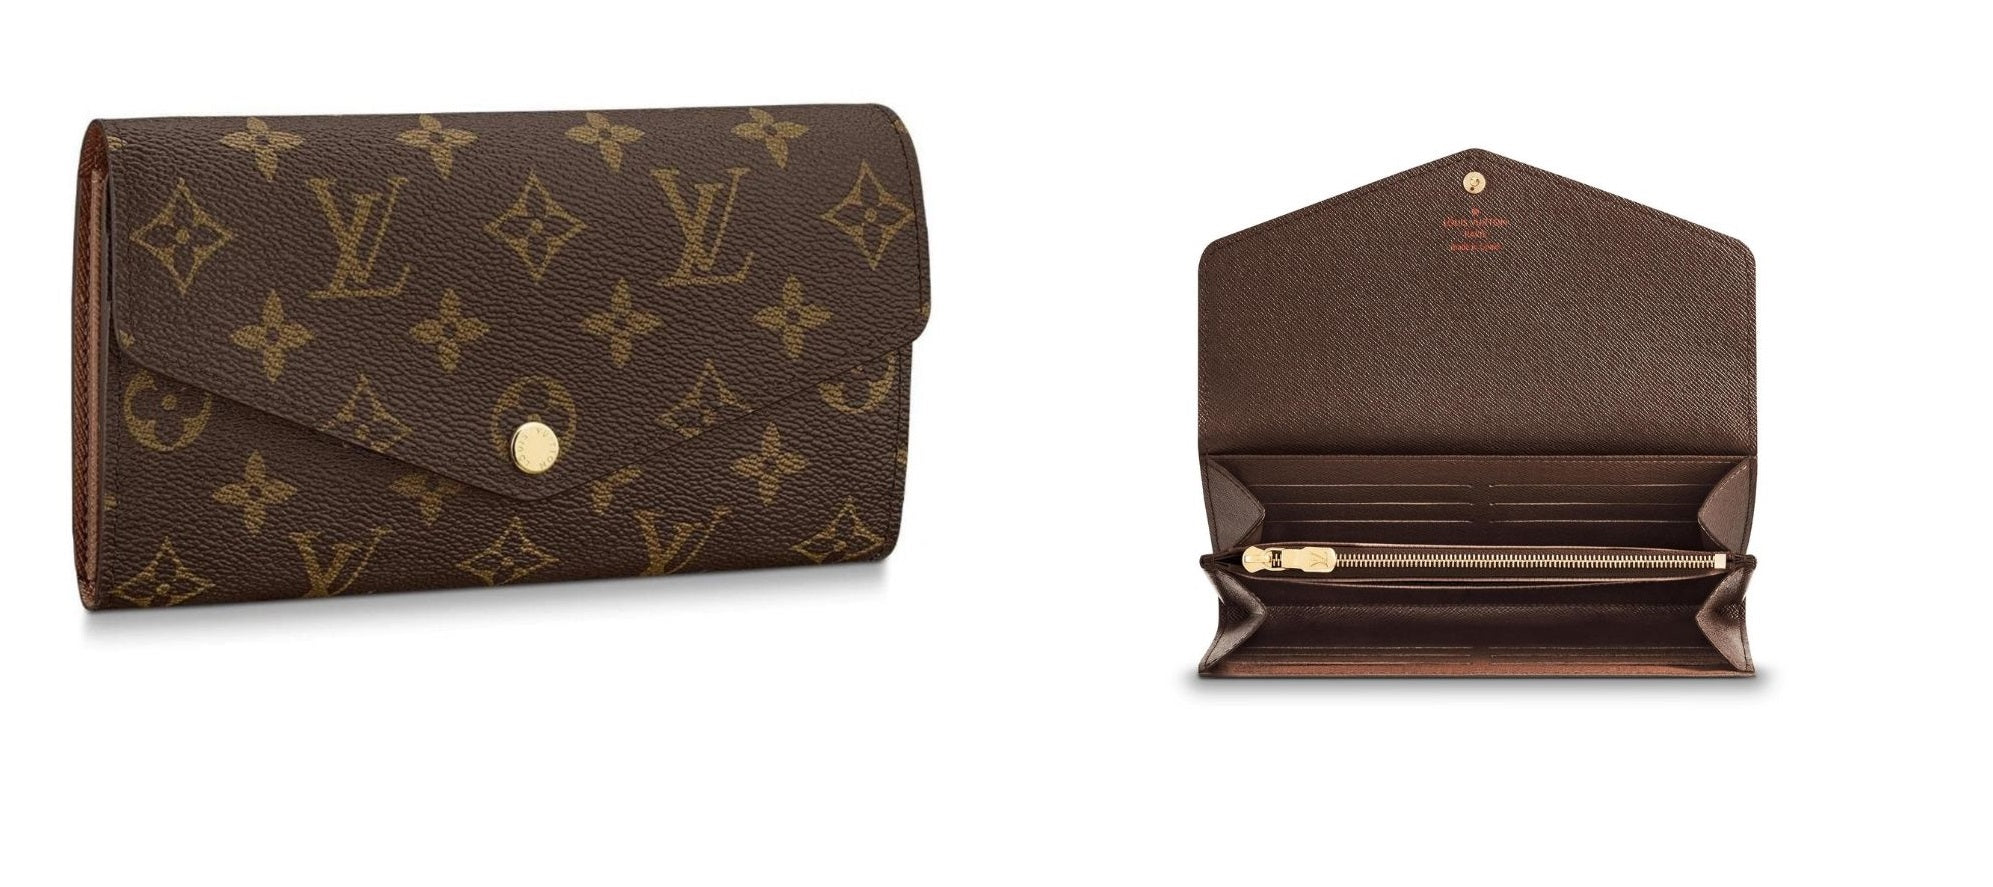 ❤️REVIEW/COMPARISON - Louis Vuitton Emilie wallet (vs Sarah wallet) 